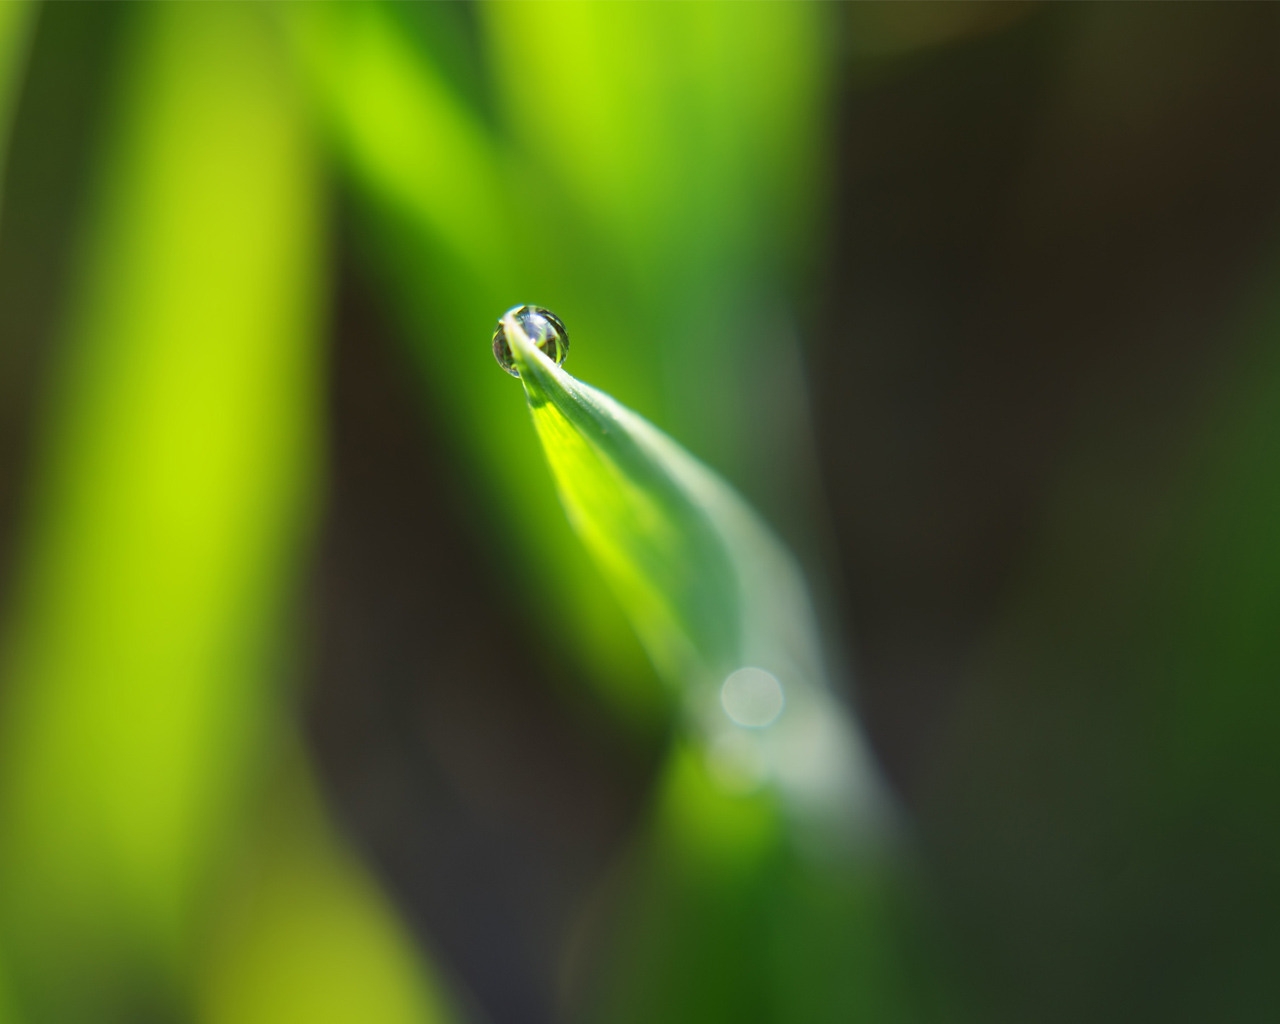 Dewdrop on leaf for 1280 x 1024 resolution